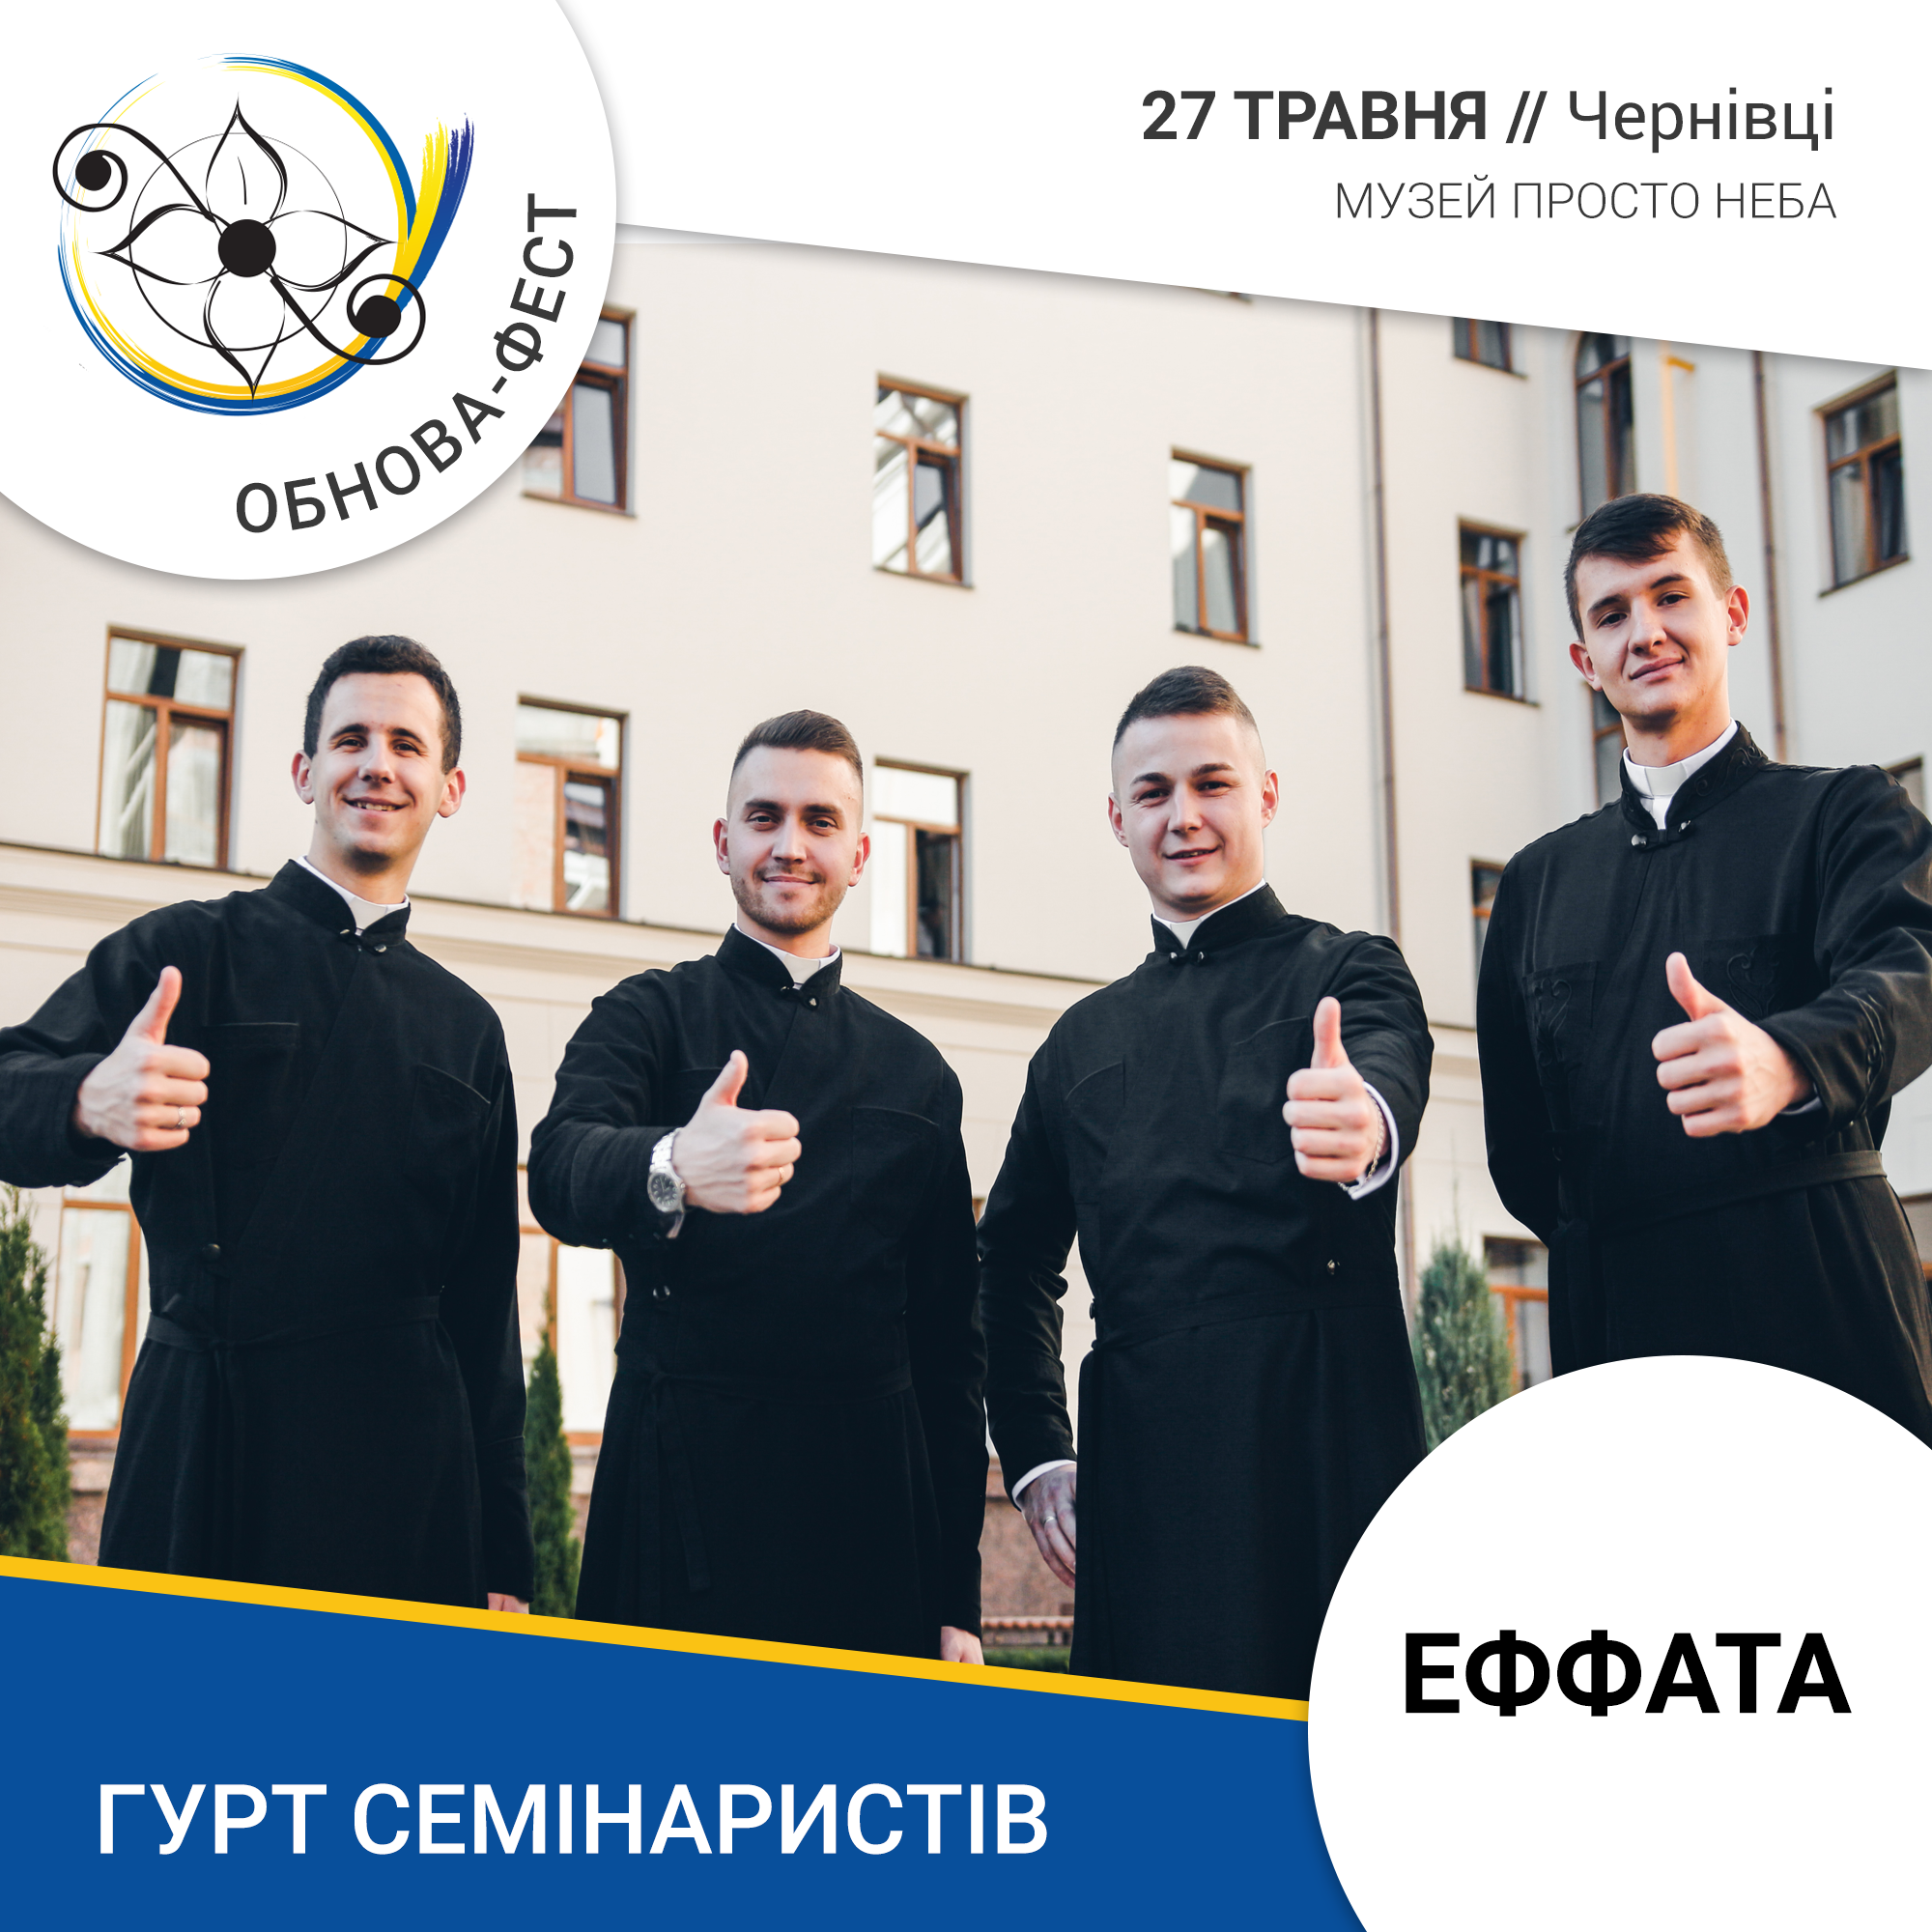 На ювілейному Обнова-фесті 27 травня своїми голосами будуть вражати брати-семінаристи, які ще у 2013 році створили гурт «Εφφατά»